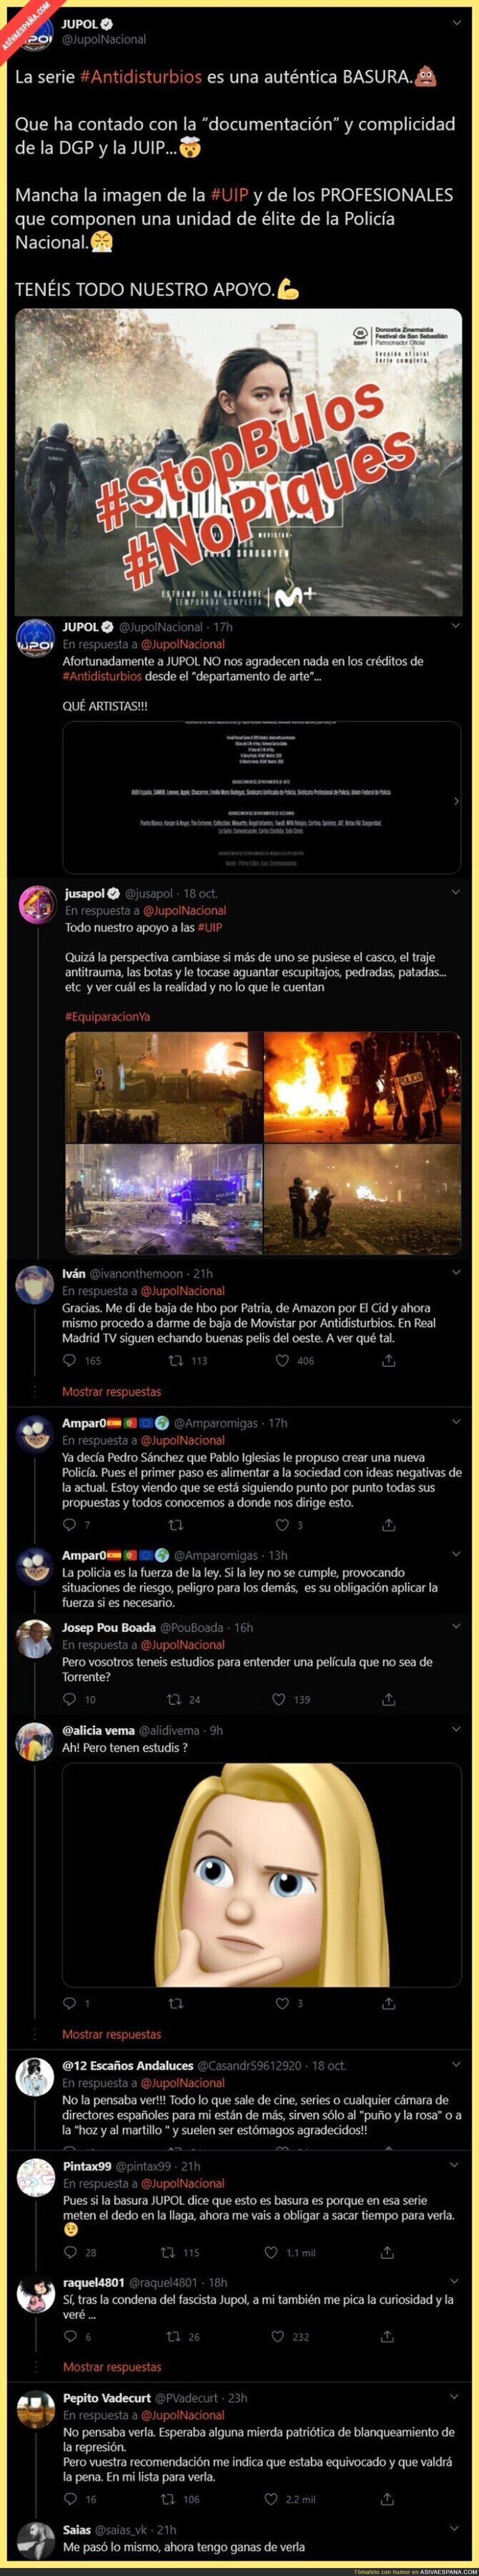 A JUPOL no le gusta la serie 'Antidisturbios' y todo el mundo se está lanzando a verla tras este penoso tuit de ellos